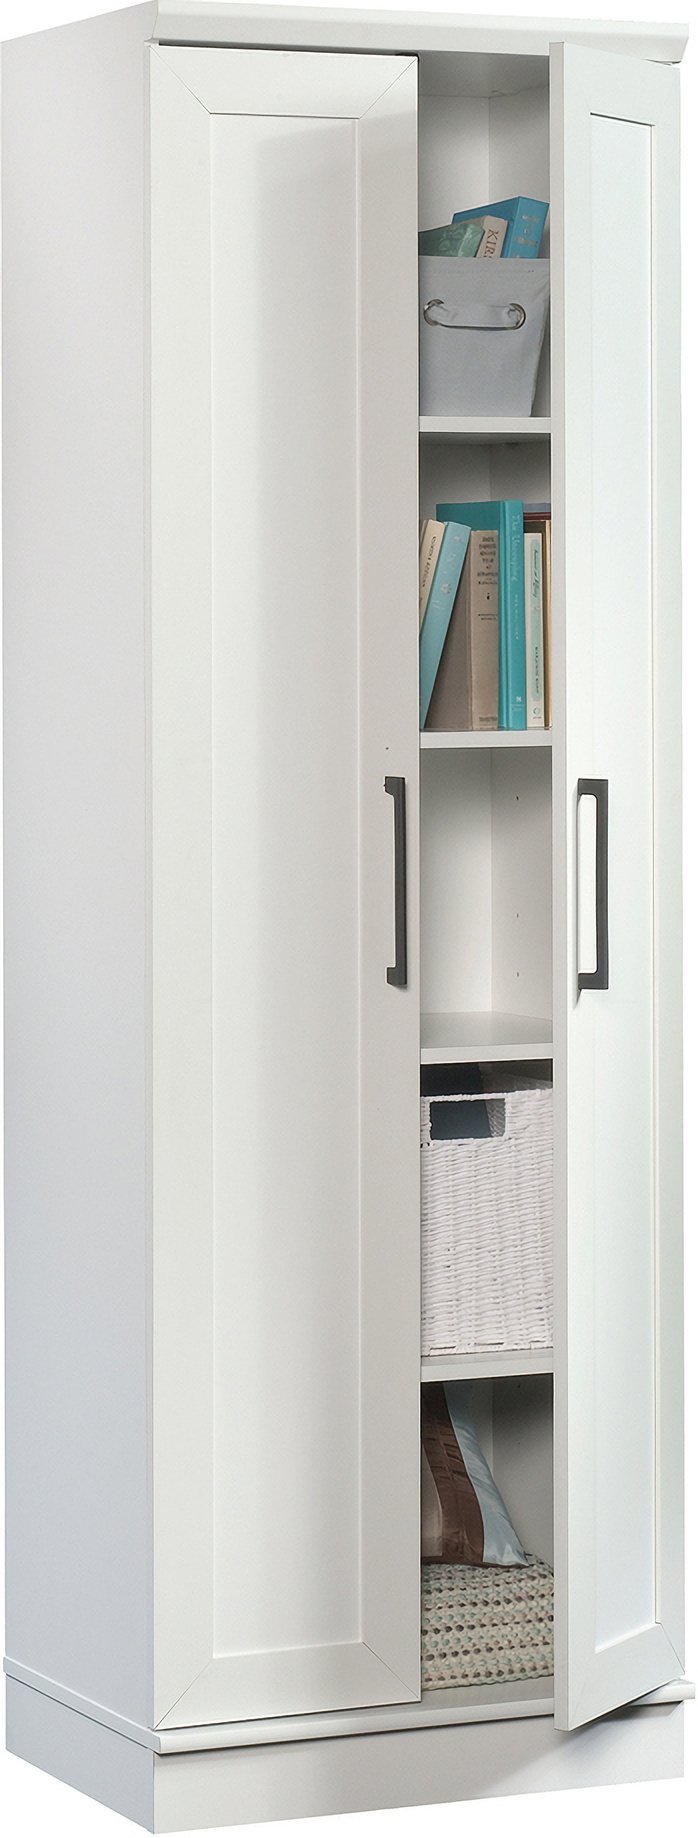 Sauder 4-Shelf Homeplus Storage Cabinet - White